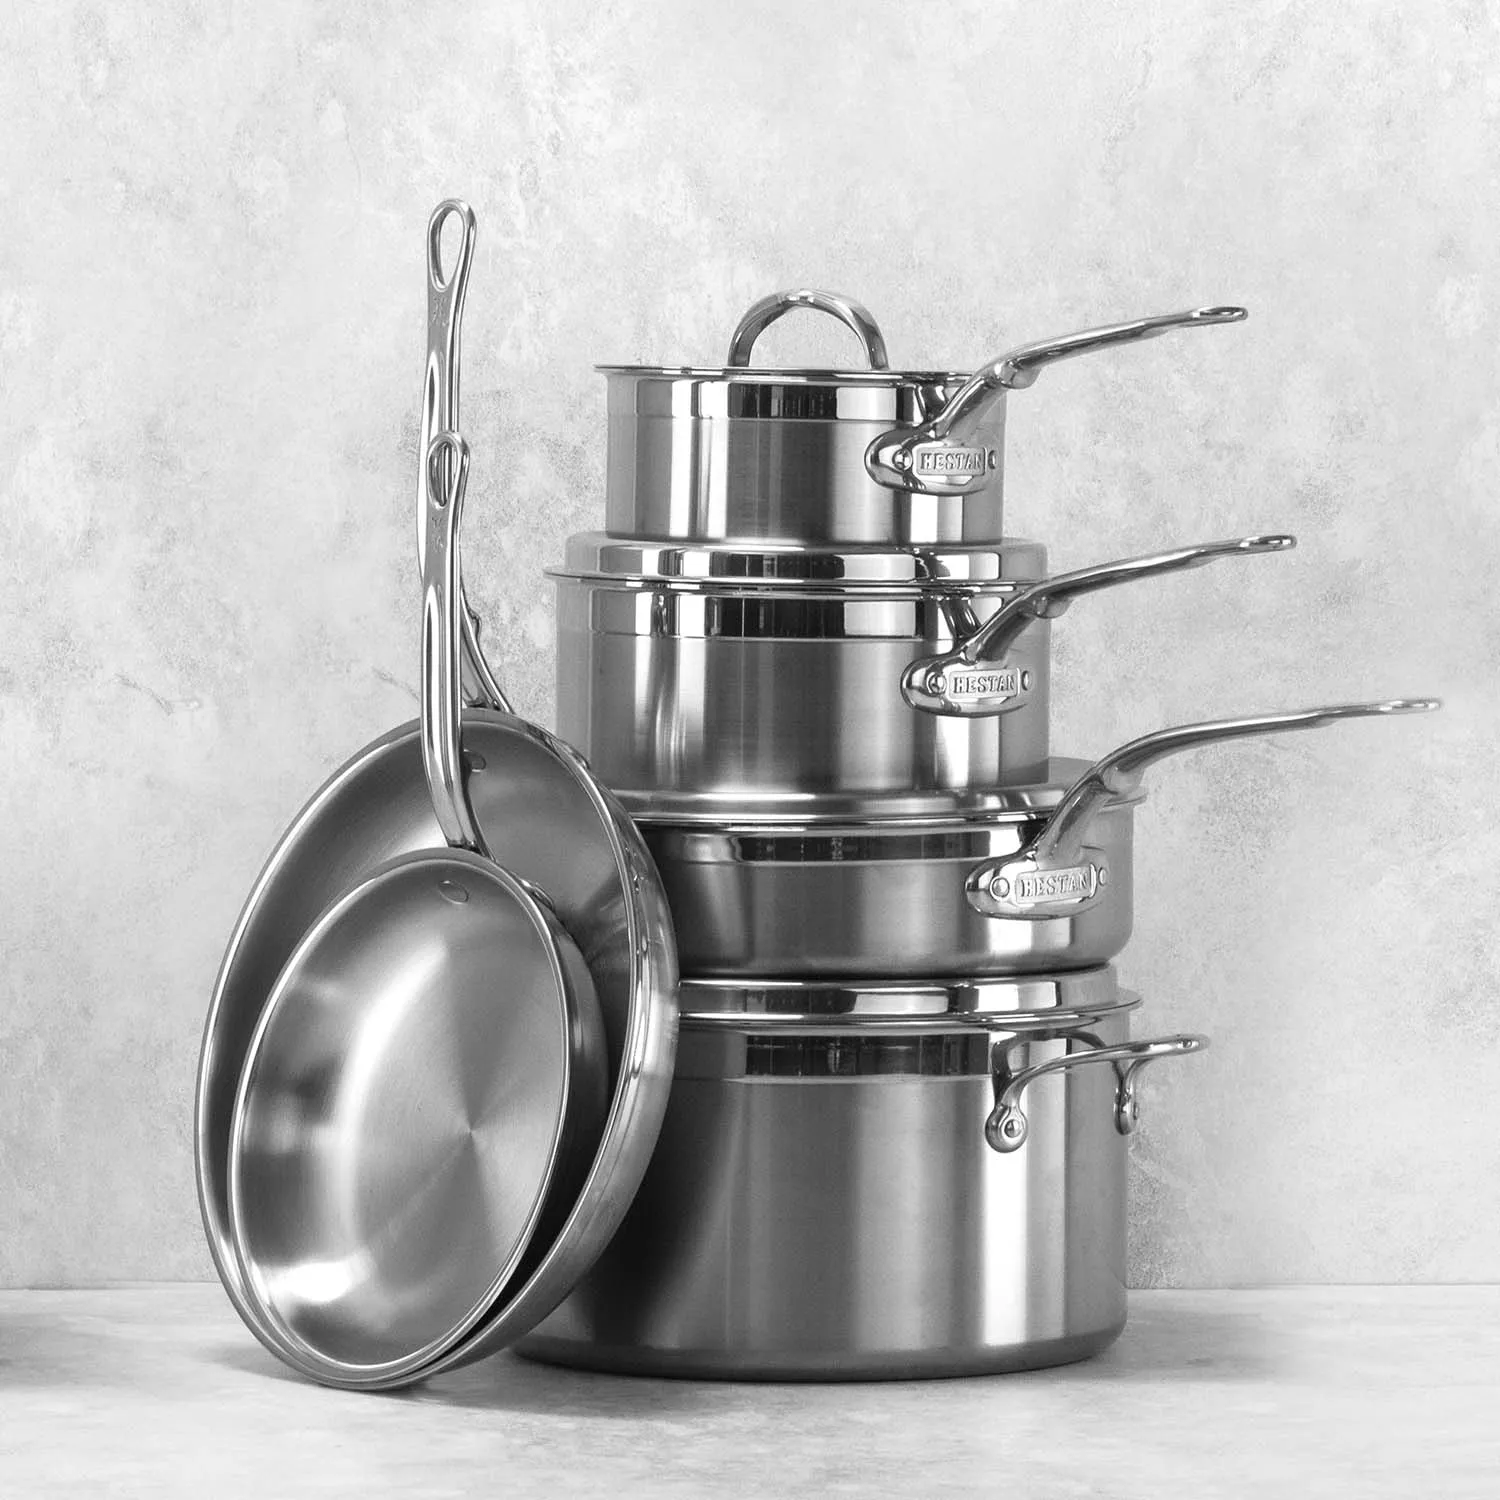 Hestan NanoBond Stainless Steel 10-Piece Cookware Set + Reviews